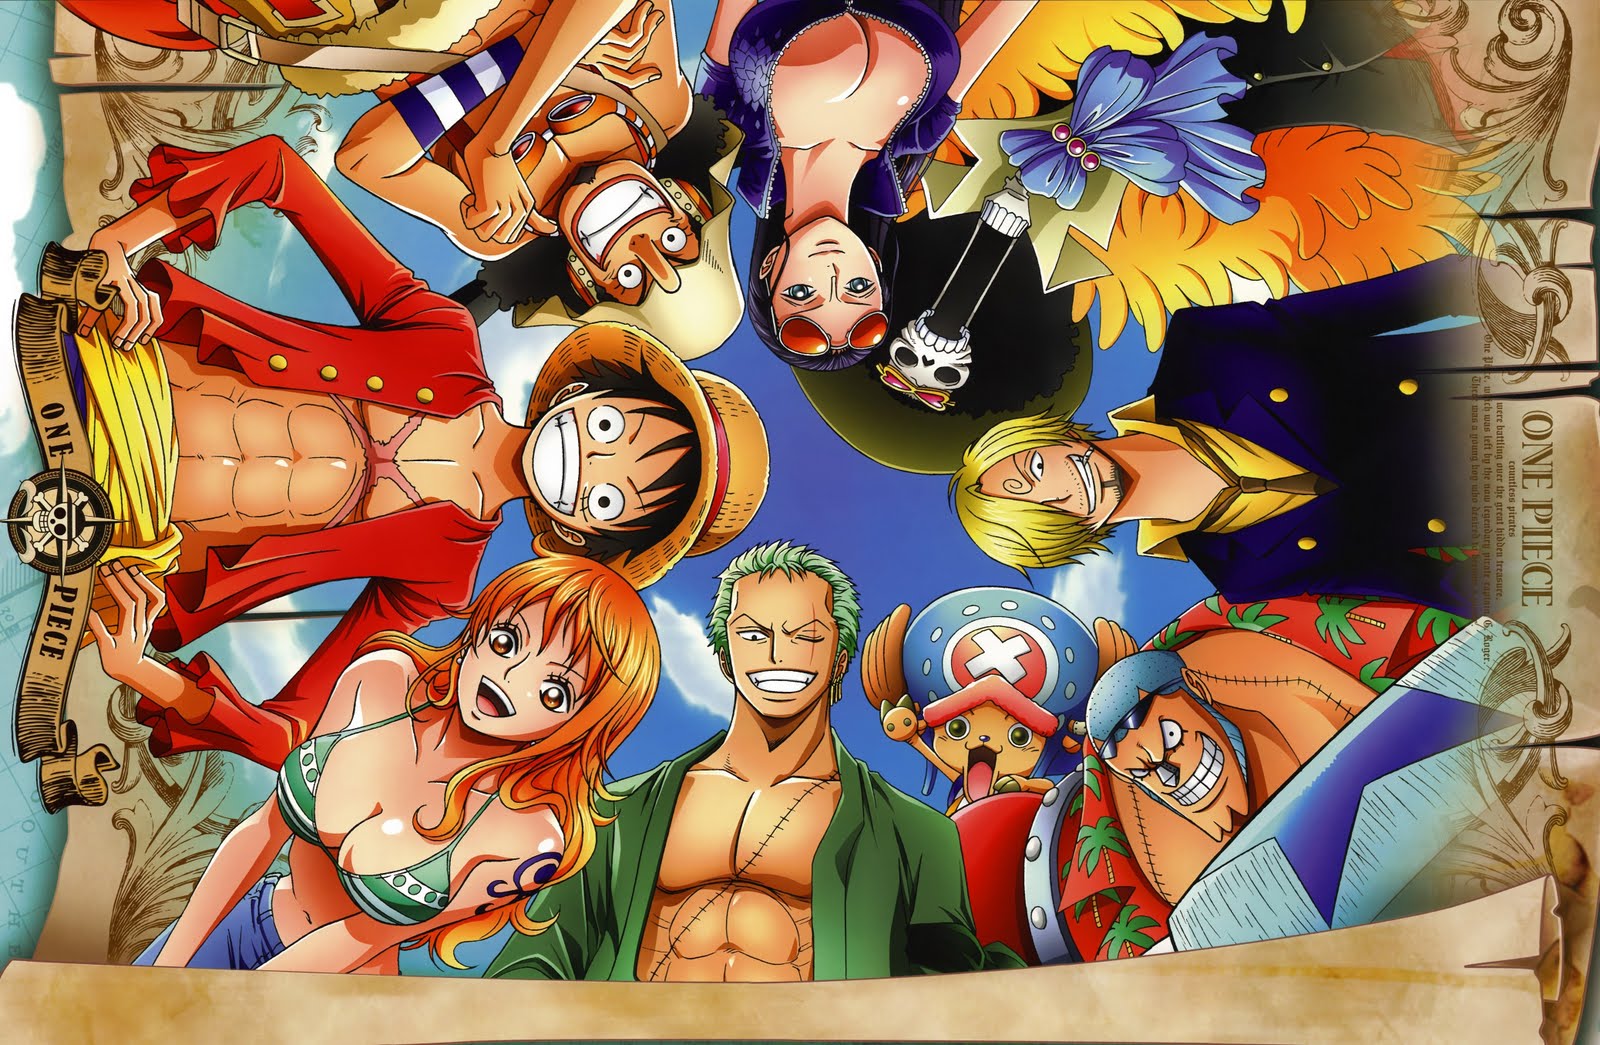 Kumpulan Wallpaper One Piece Terbaru Kumpulan Gambar Meme Lucu